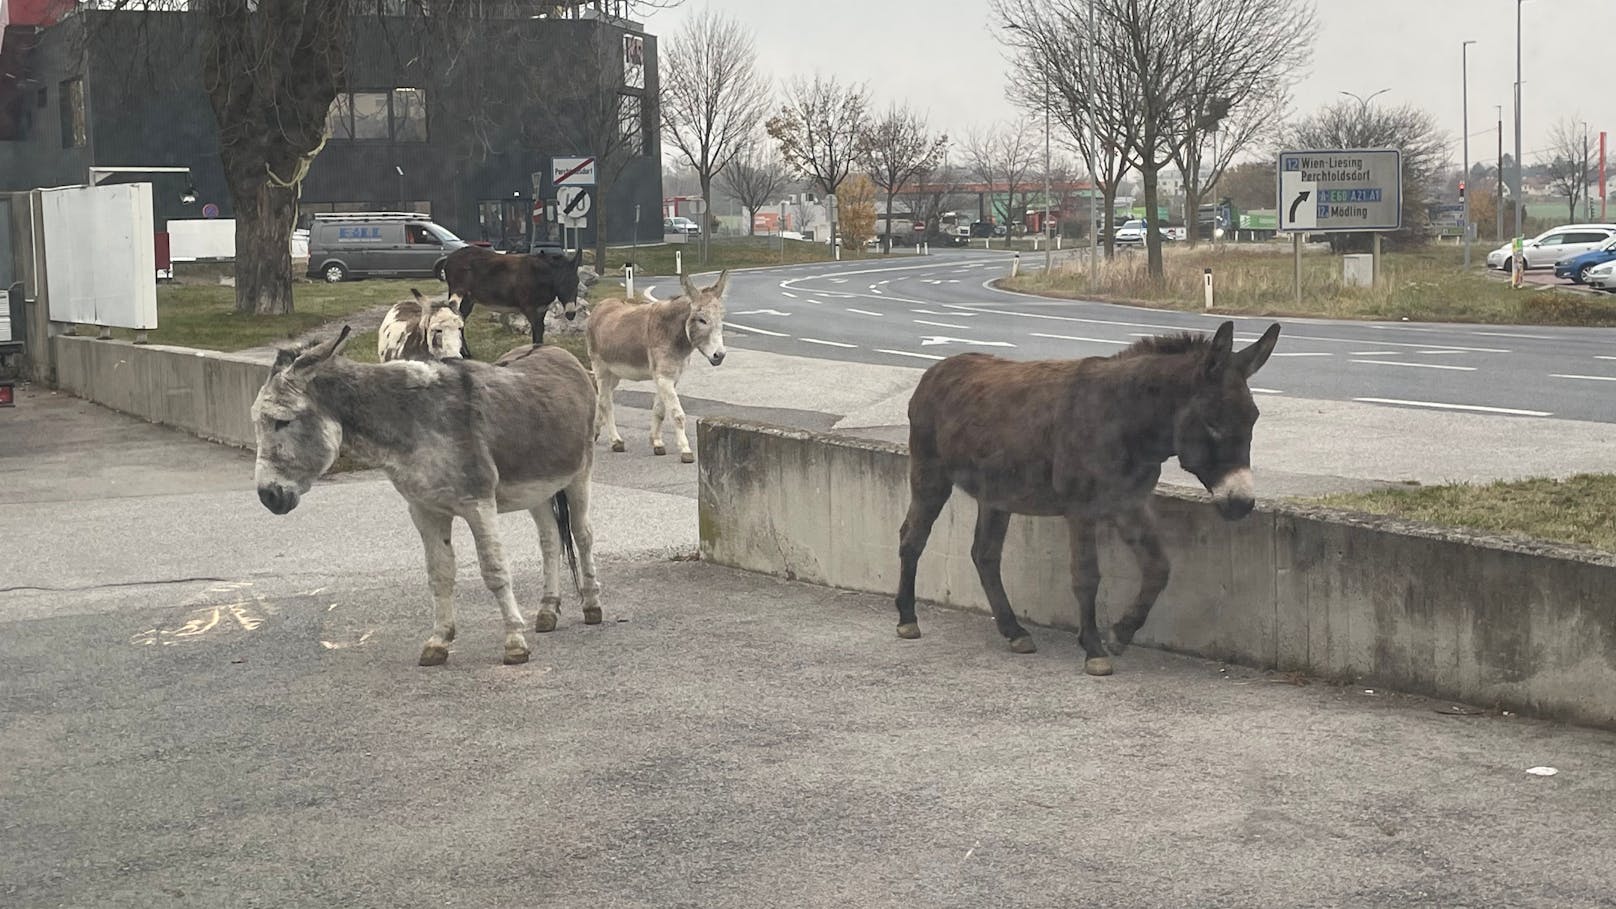 Bild 10: "Wie Jumanji!" – Eine Eselgruppe büxte aus und lief durch die Straßen von Perchtoldsdorf. <a href="https://www.heute.at/s/esel-laufen-durch-perchtoldsdorf-wie-bei-jumanji-100173931">Mehr dazu &gt;&gt;&gt;</a>